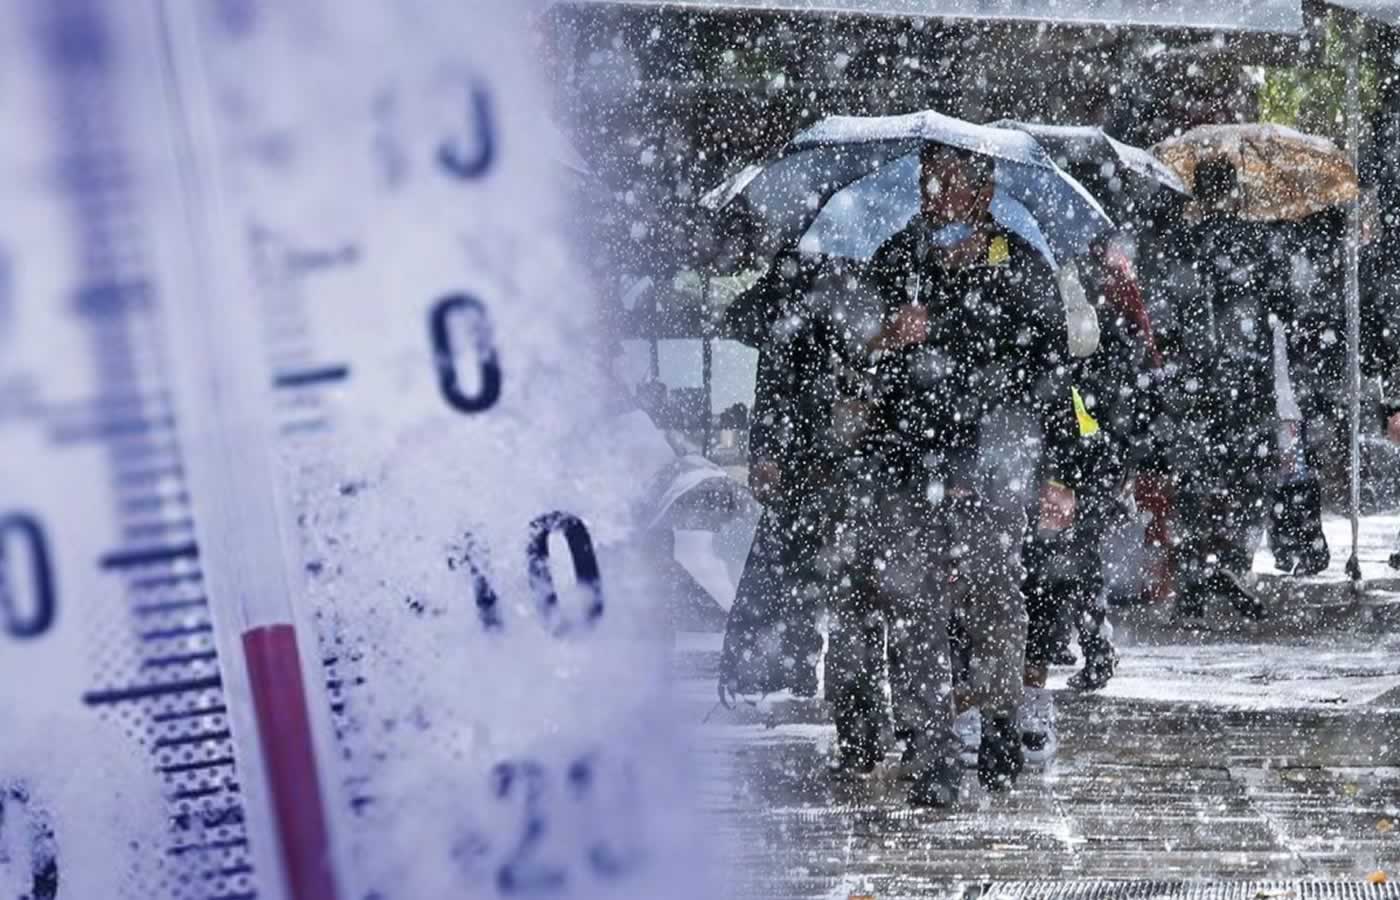 Ο κρύος καιρός για τον οποίο όλοι οι μετεωρολόγοι συζητούν έρχεται σίγουρα απο την Κυριακή με πυκνές χιονοπτώσεις στην Αττική σύμφωνα με το έκτακτο Δελτίο καιρού.